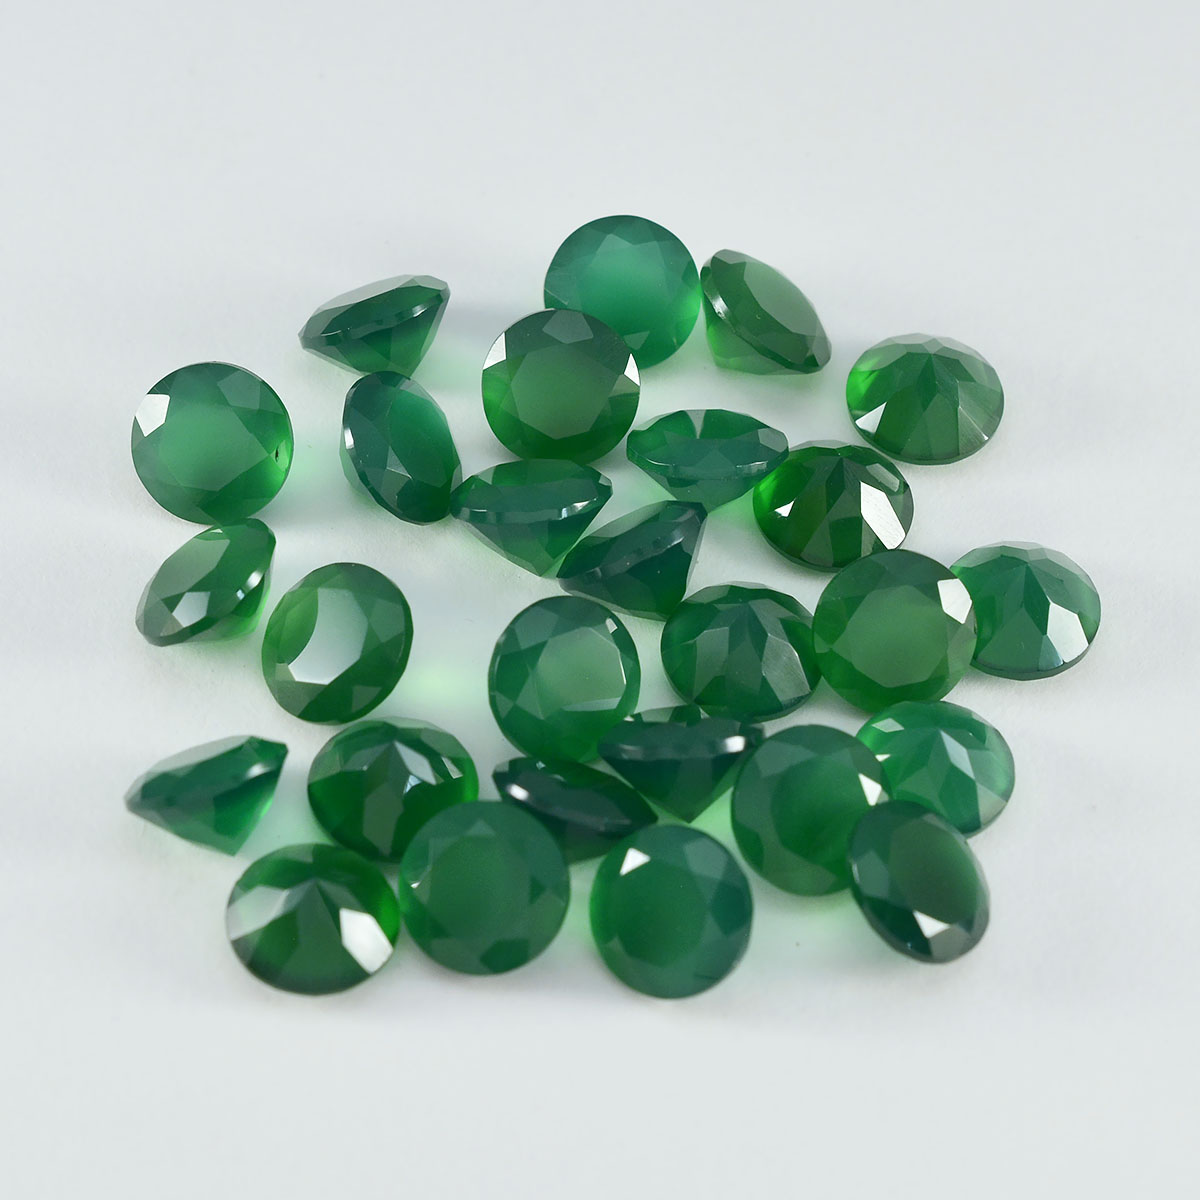 Riyogems 1 pièce d'onyx vert véritable à facettes 4x4mm forme ronde a + 1 qualité pierre précieuse en vrac